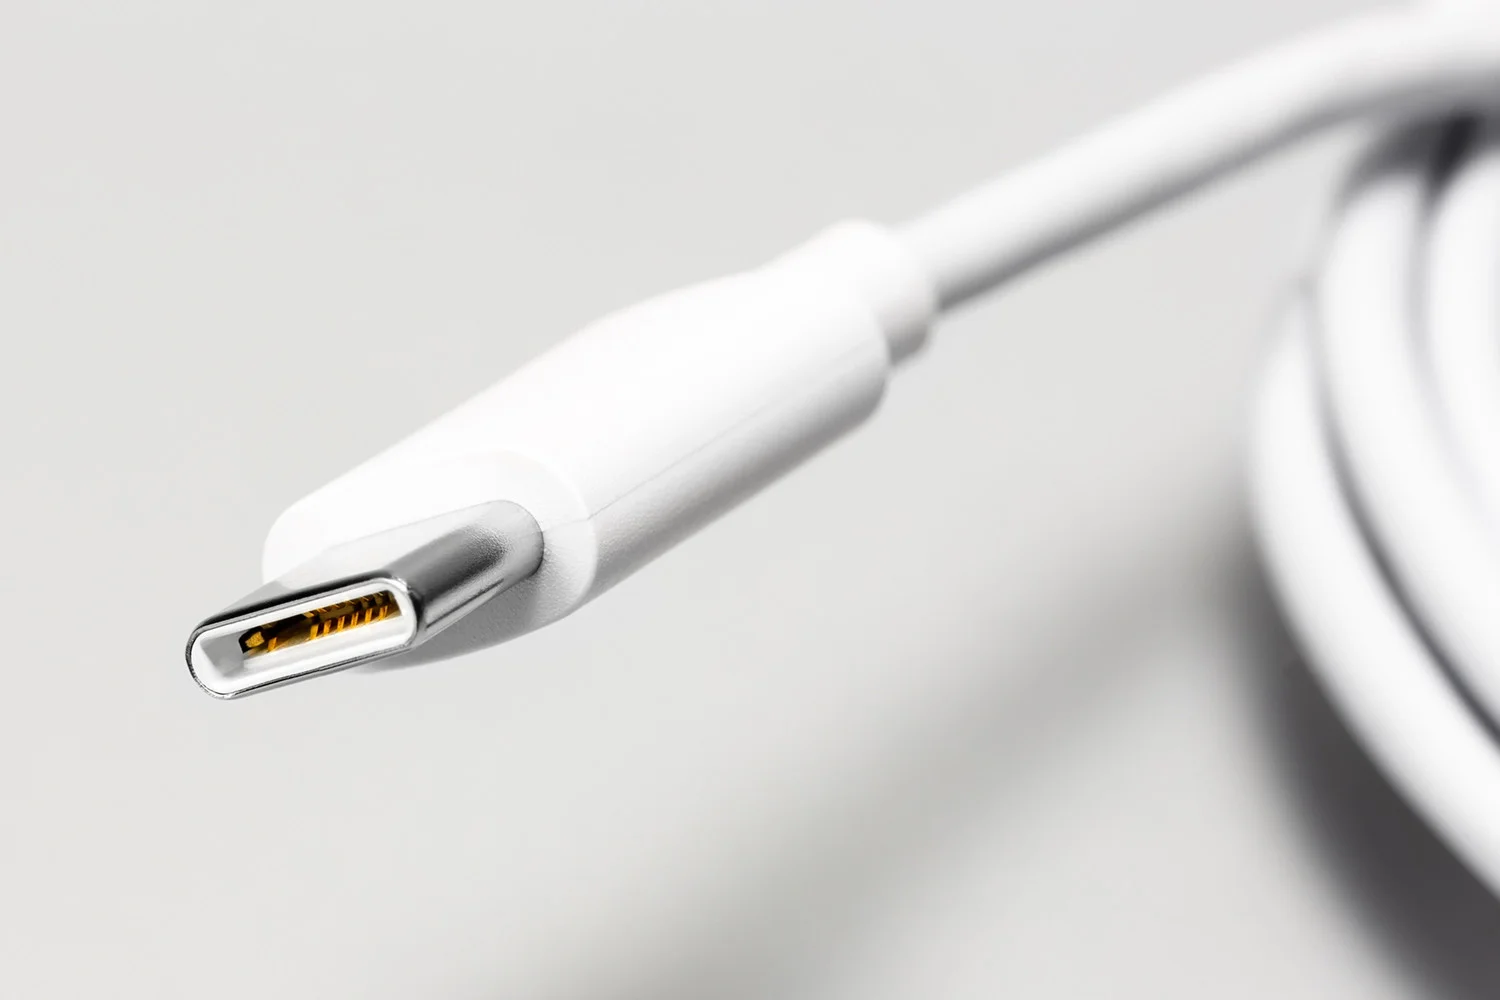 Представлений новий дизайн плетеного кабелю USB Type-C від Apple